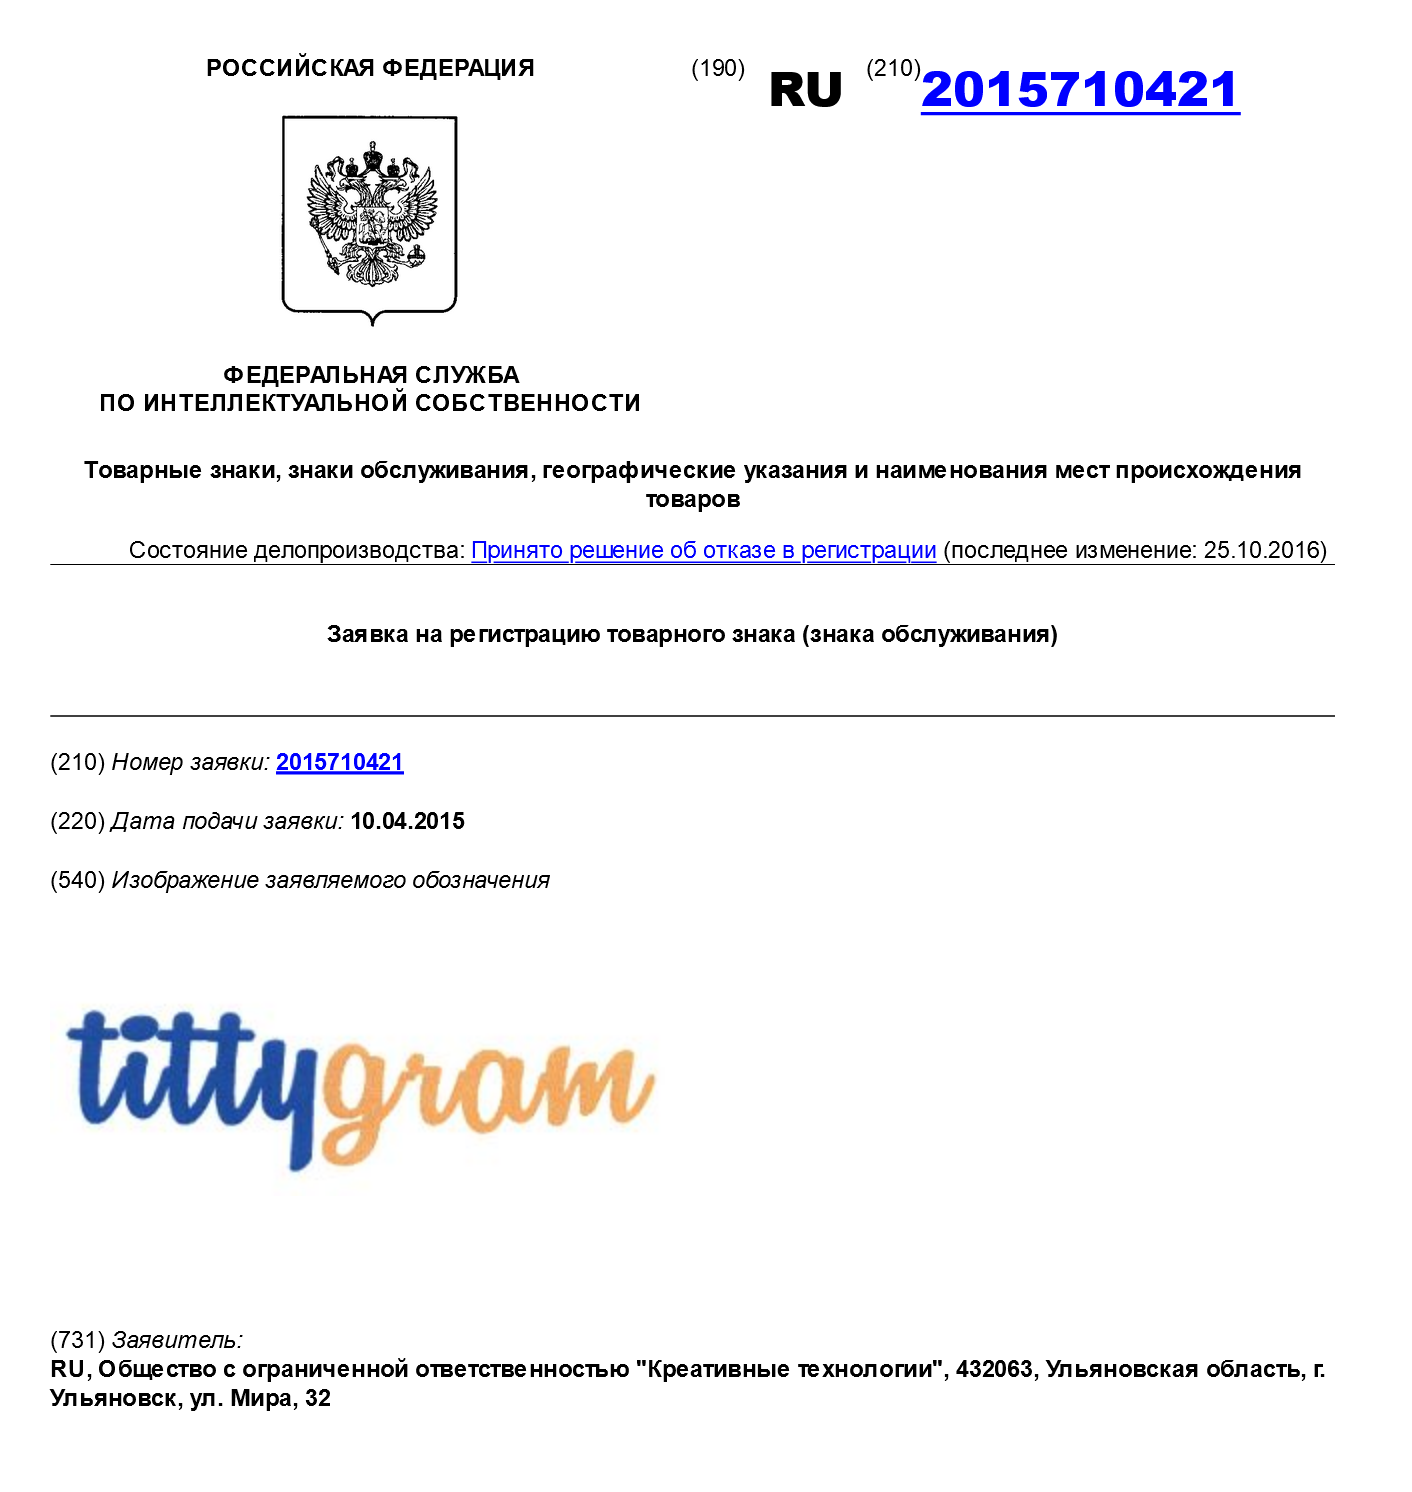 Кировская компания не смогла добиться регистрации товарного знака Instashop. In100gramm и даже Tittygram тоже получили отказы